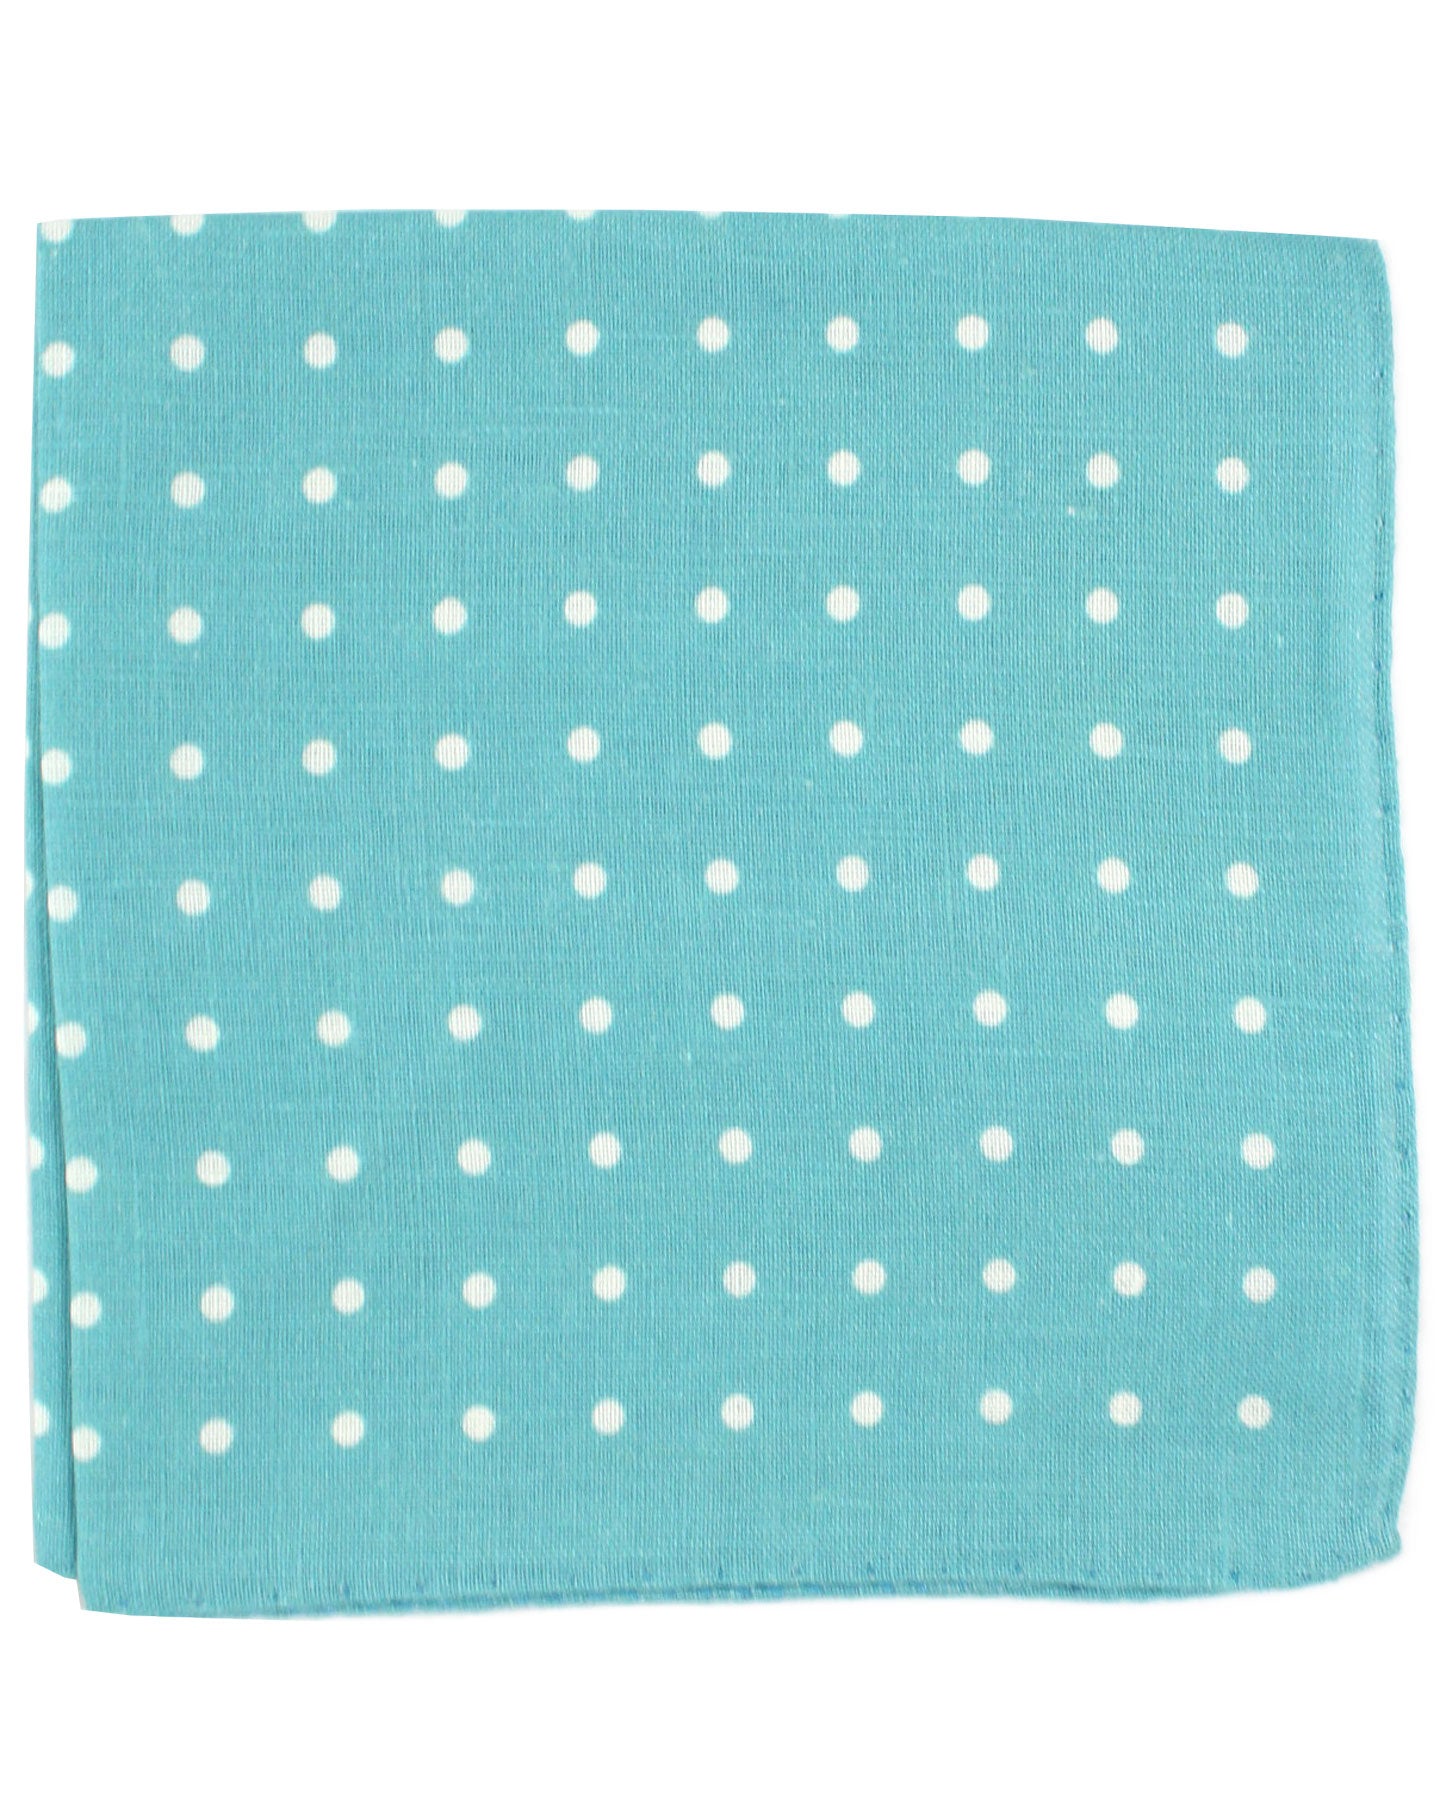 Luigi Borrelli Silk Pocket Square Aqua White Dots